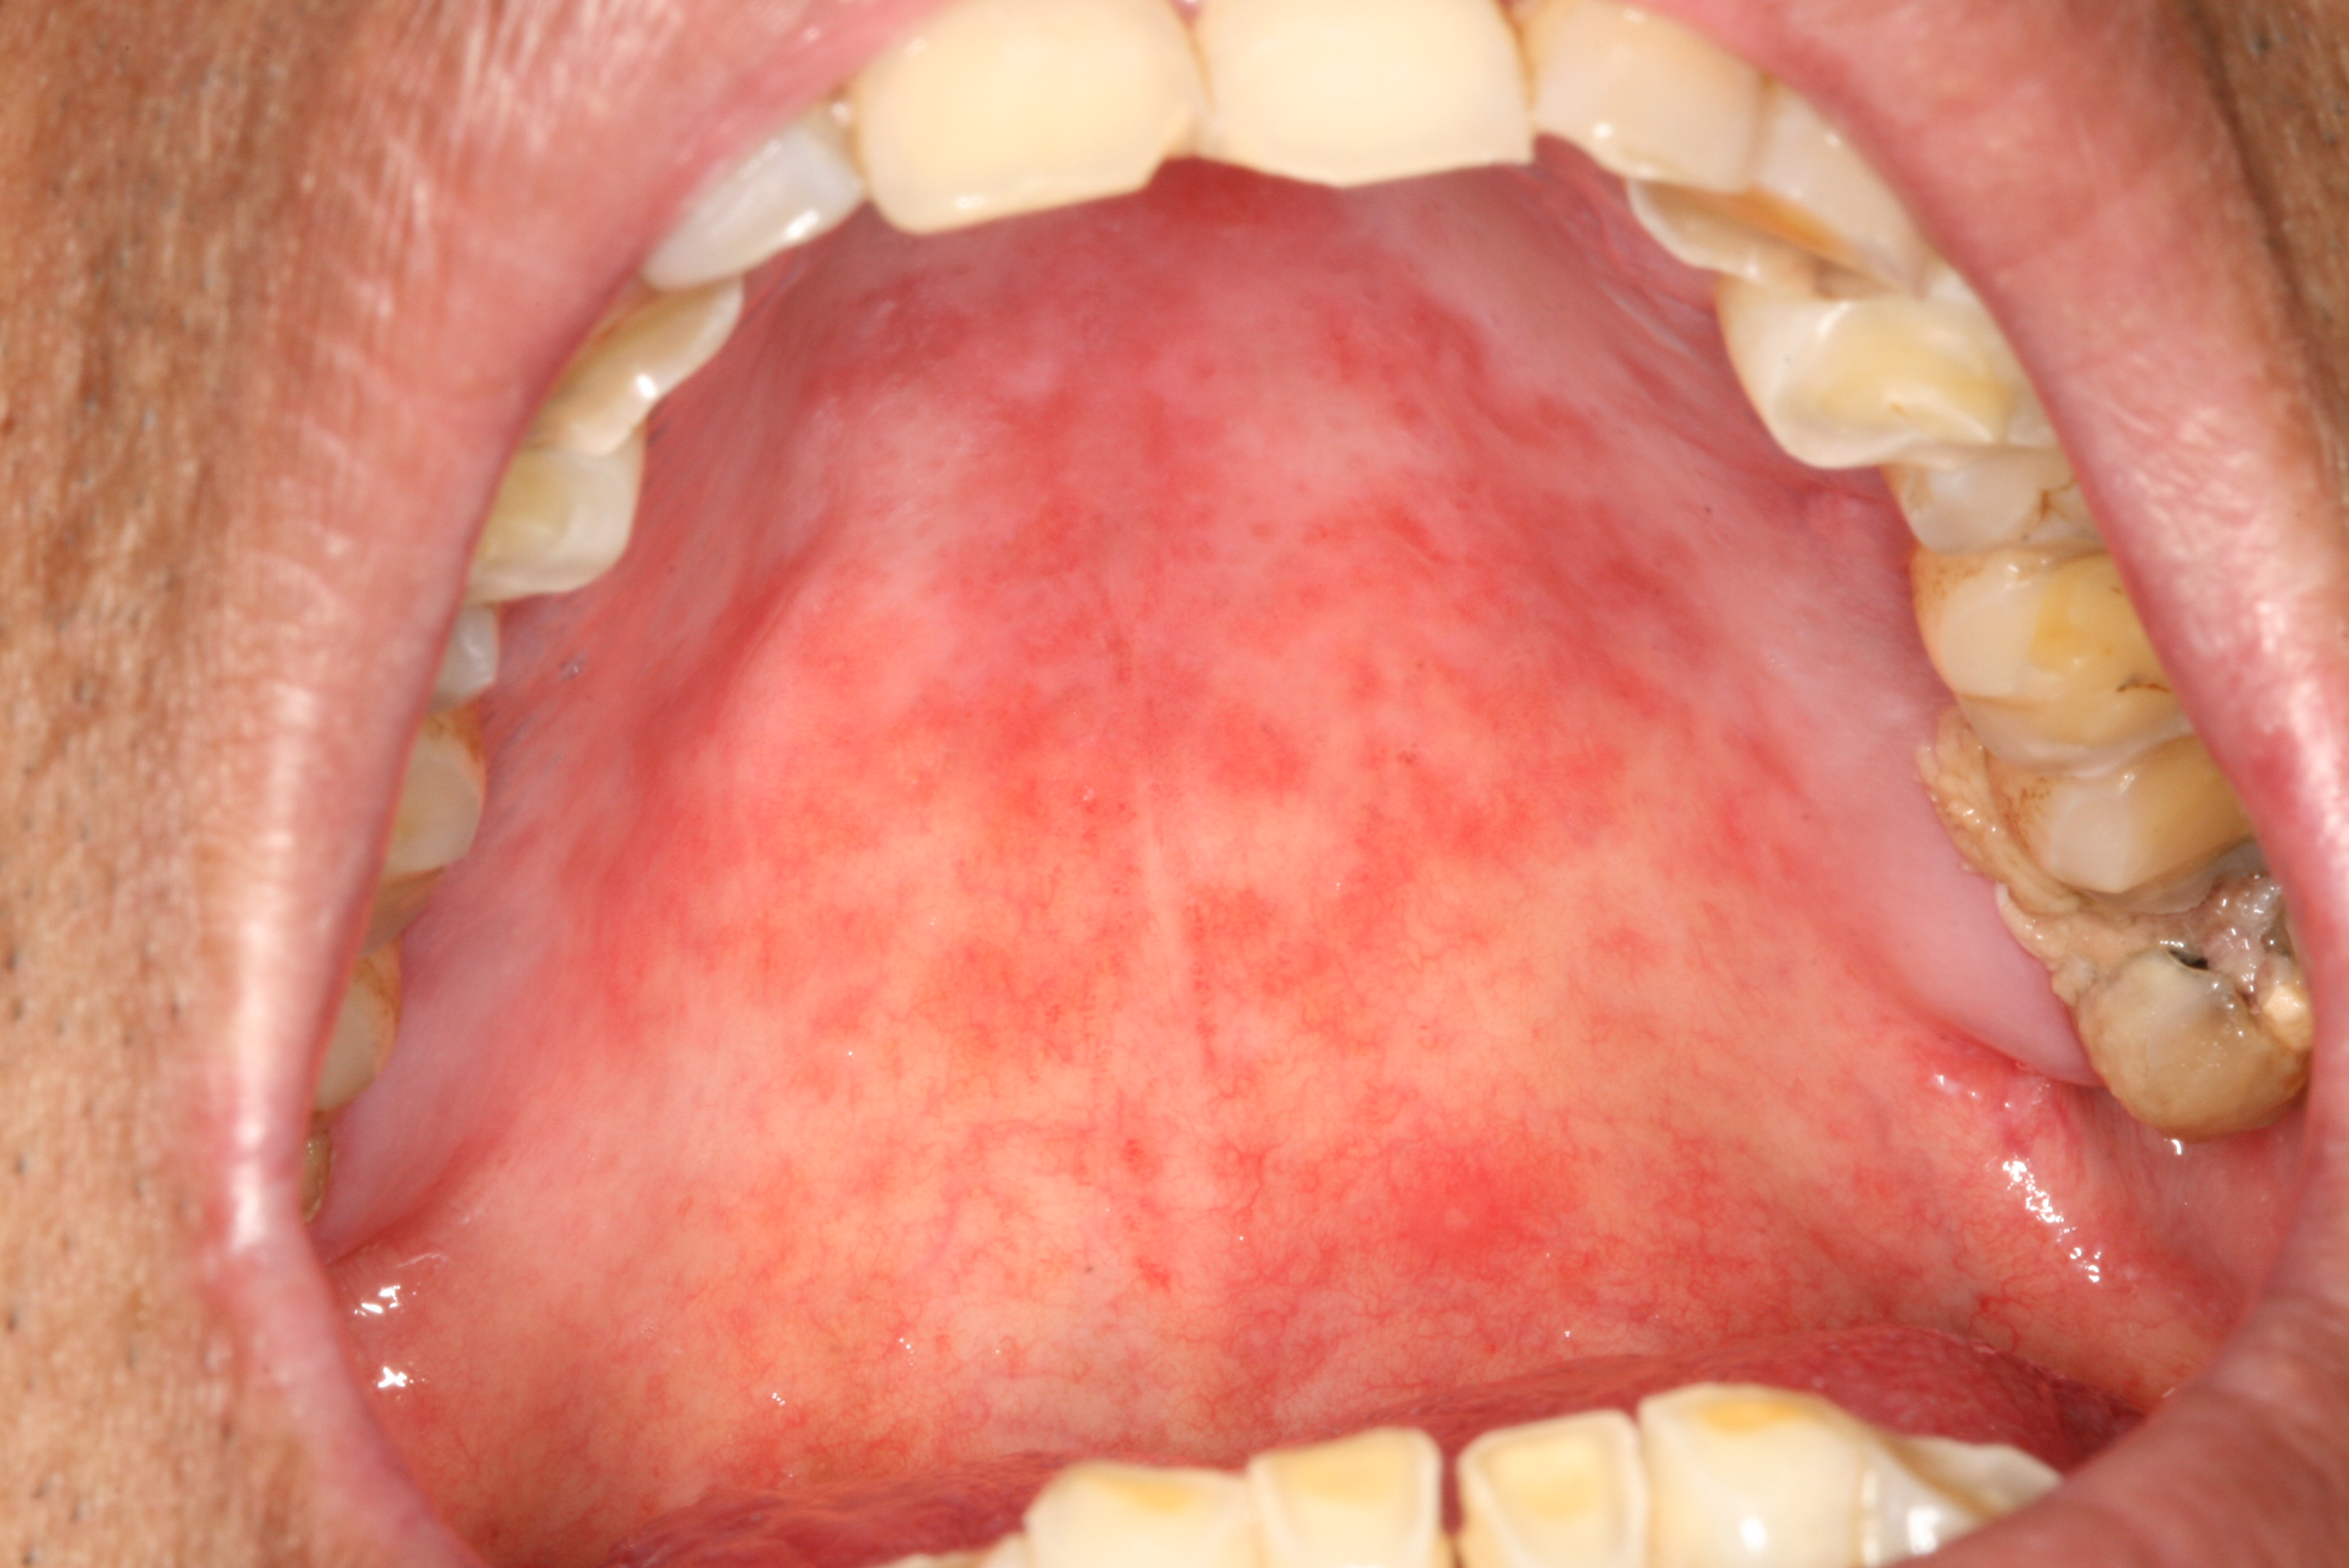 口腔潜在恶性病变2005年世界卫生组织建议将原先的口腔癌前病变与癌前